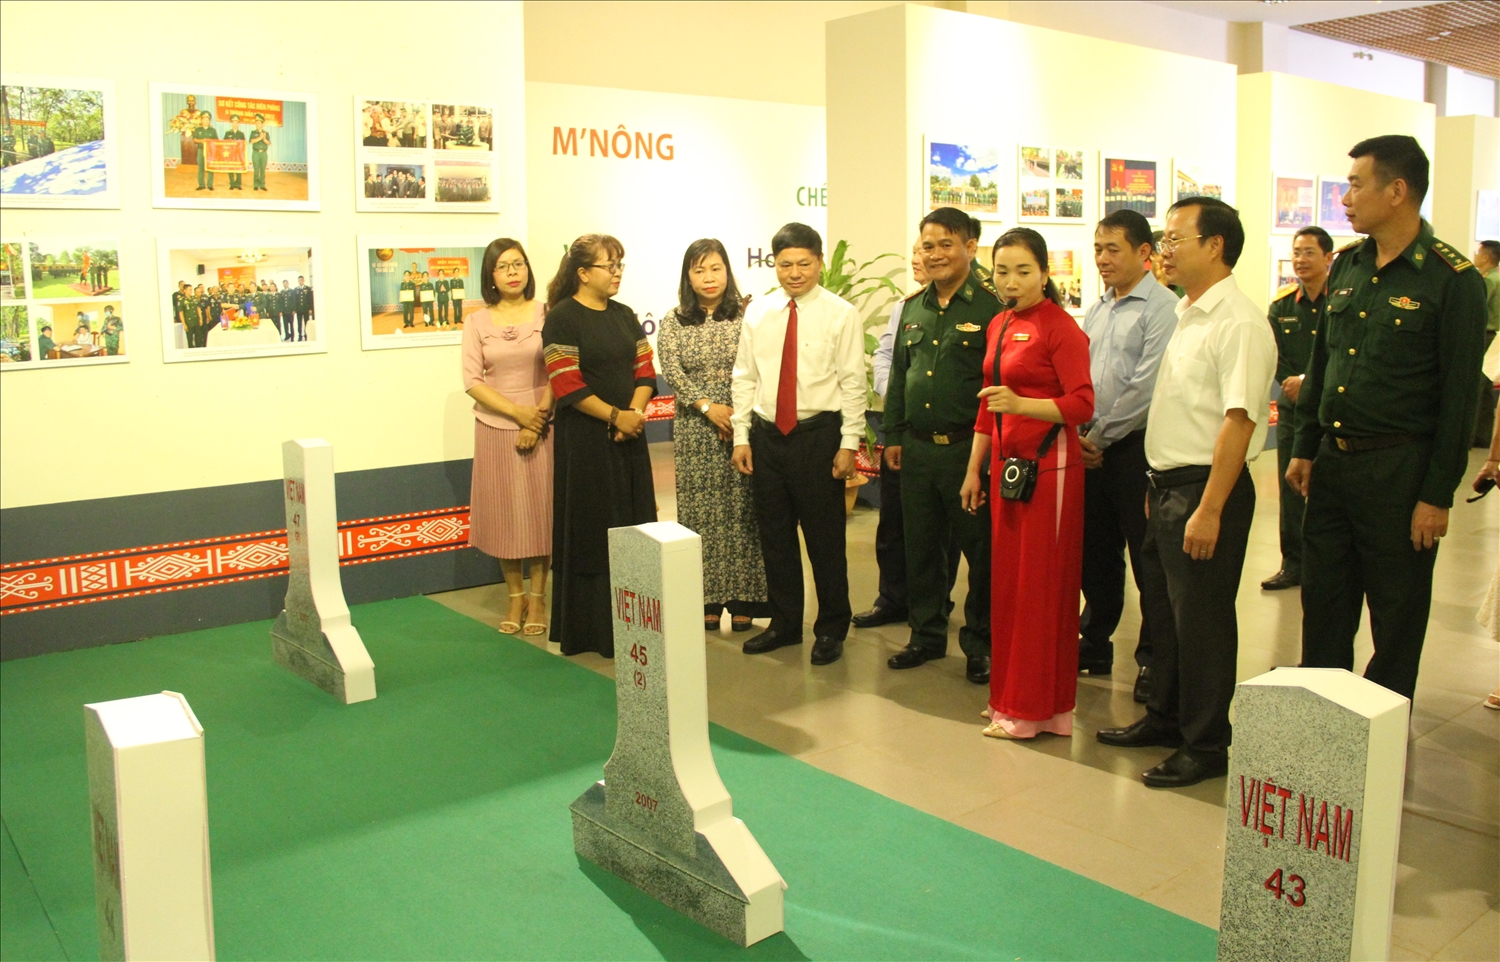 Nhân viên Bảo tàng Đắk Lắk giới thiệu về các cột mốc trên biên giới Việt Nam - Campuchia tại Đắk Lắk đến các đại biểu, du khách